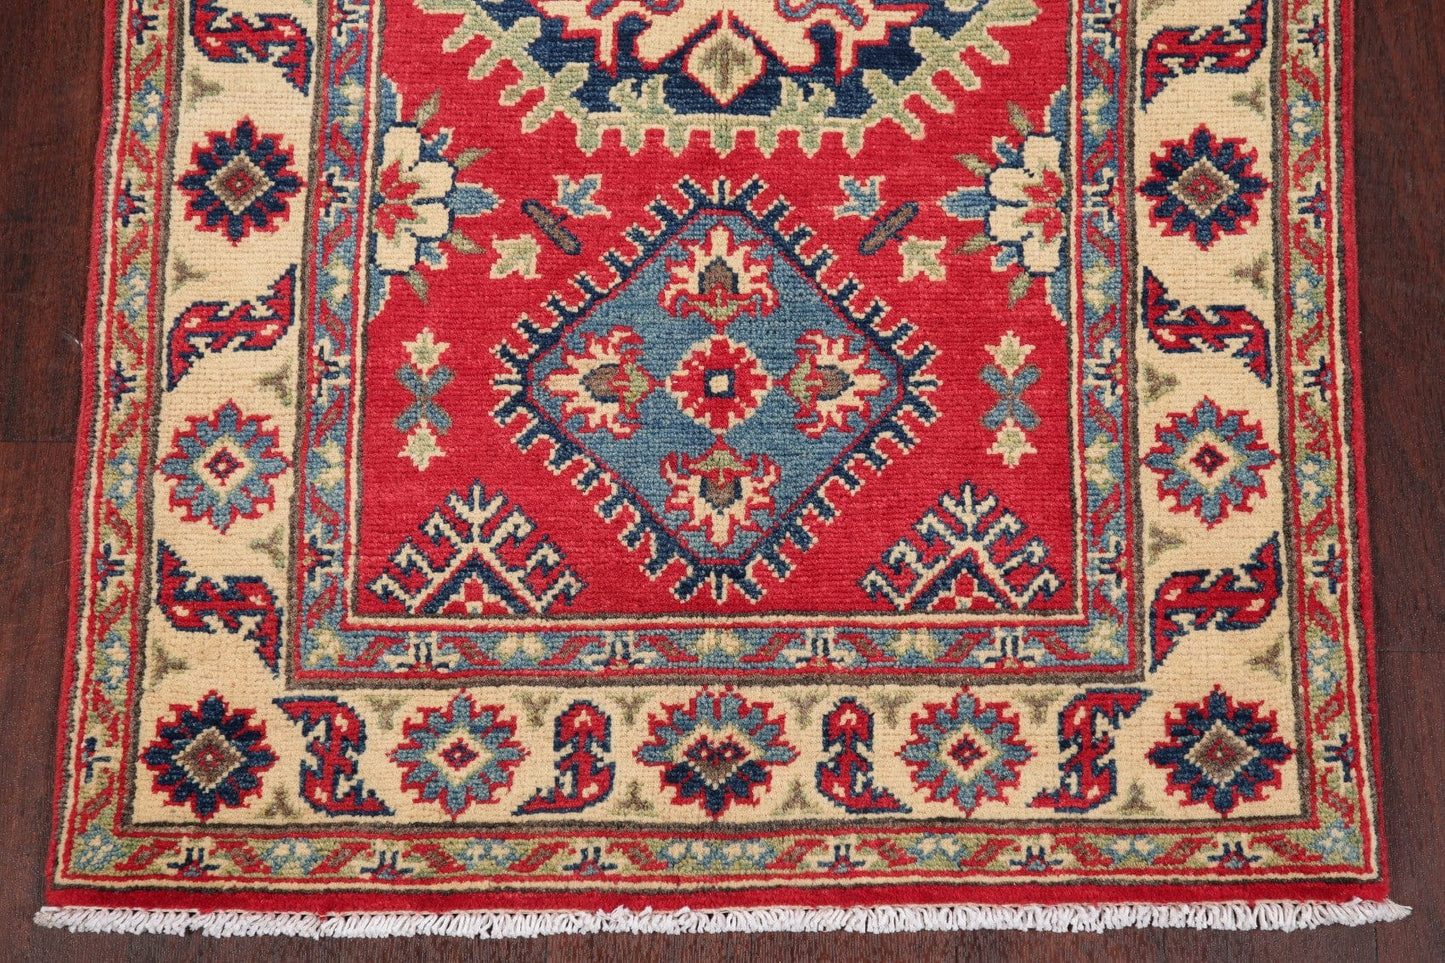 Red Kazak-Chechen Oriental Rug 3x4